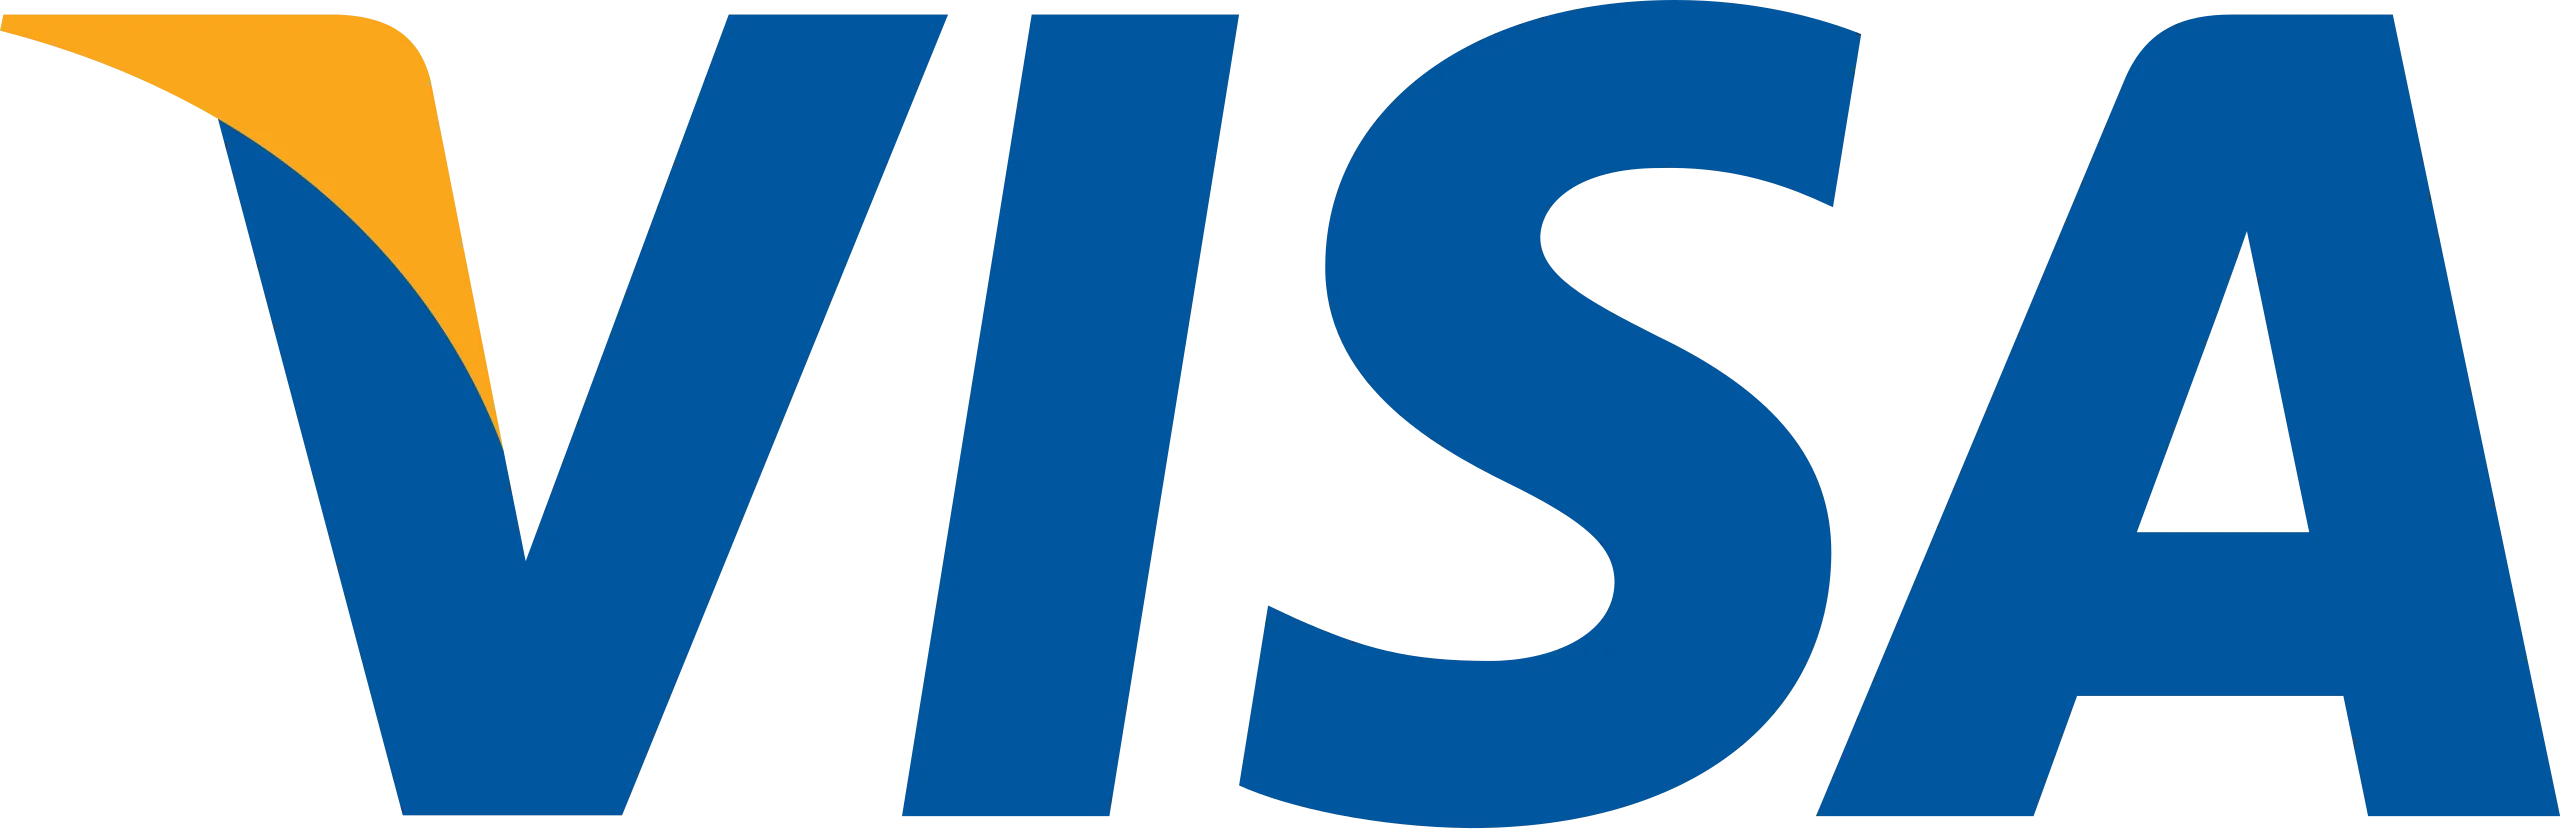 Visa inc. logo.svg